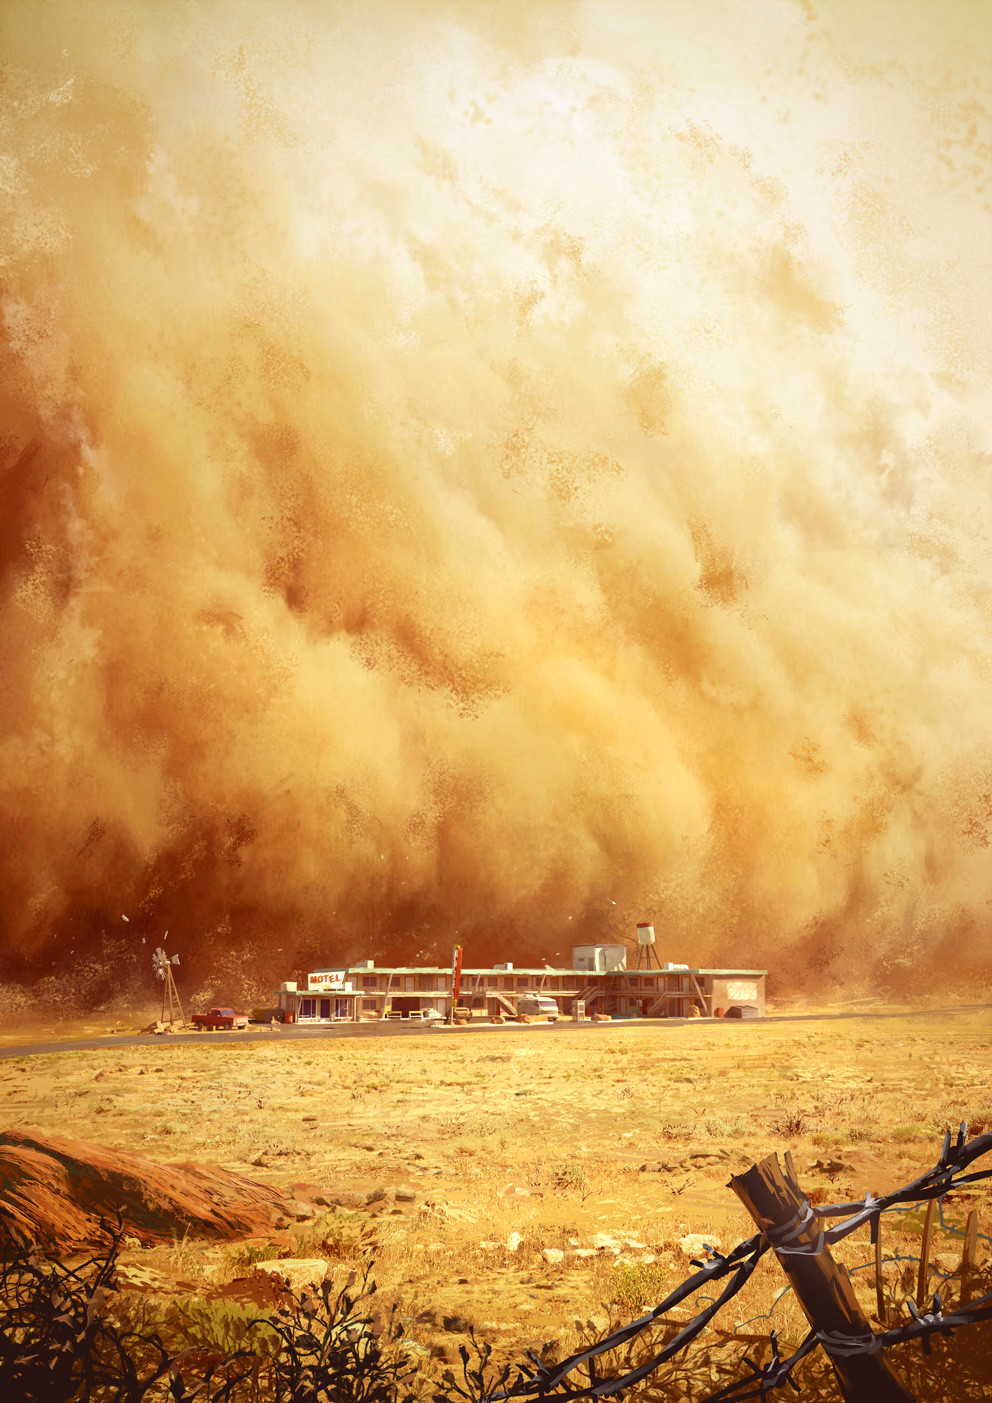 Dark Days : the sandstorm